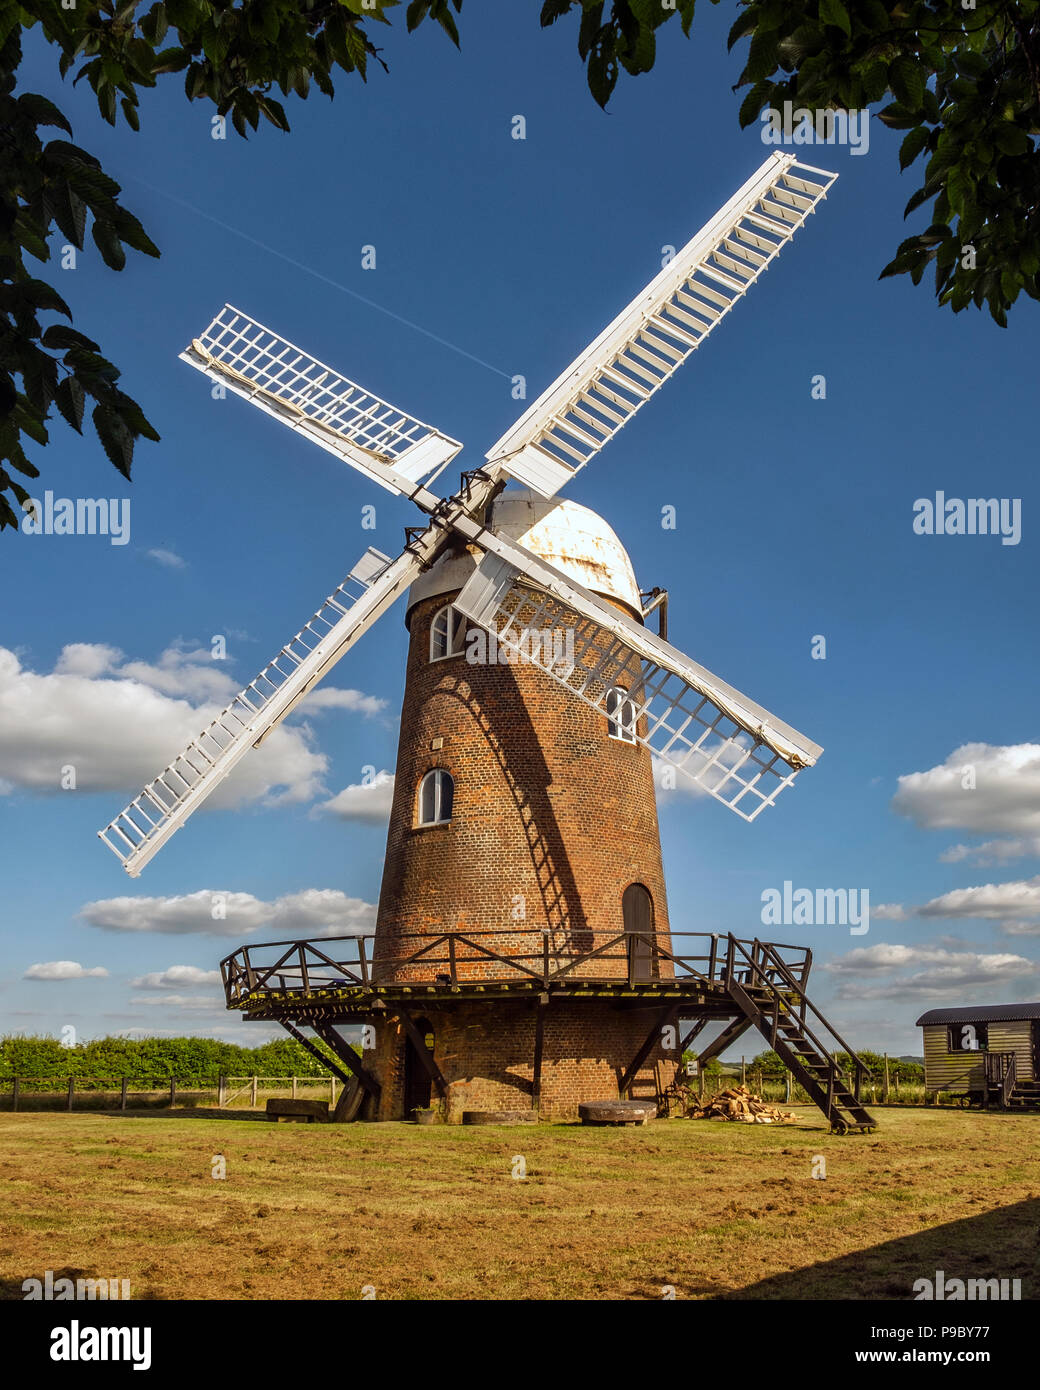 Wilton windmill, un molino de torre georgiano construido en 1821 y restaurado en el 1976, es un hito y atracción turística en el corazón de Wiltshire, REINO UNIDO Foto de stock